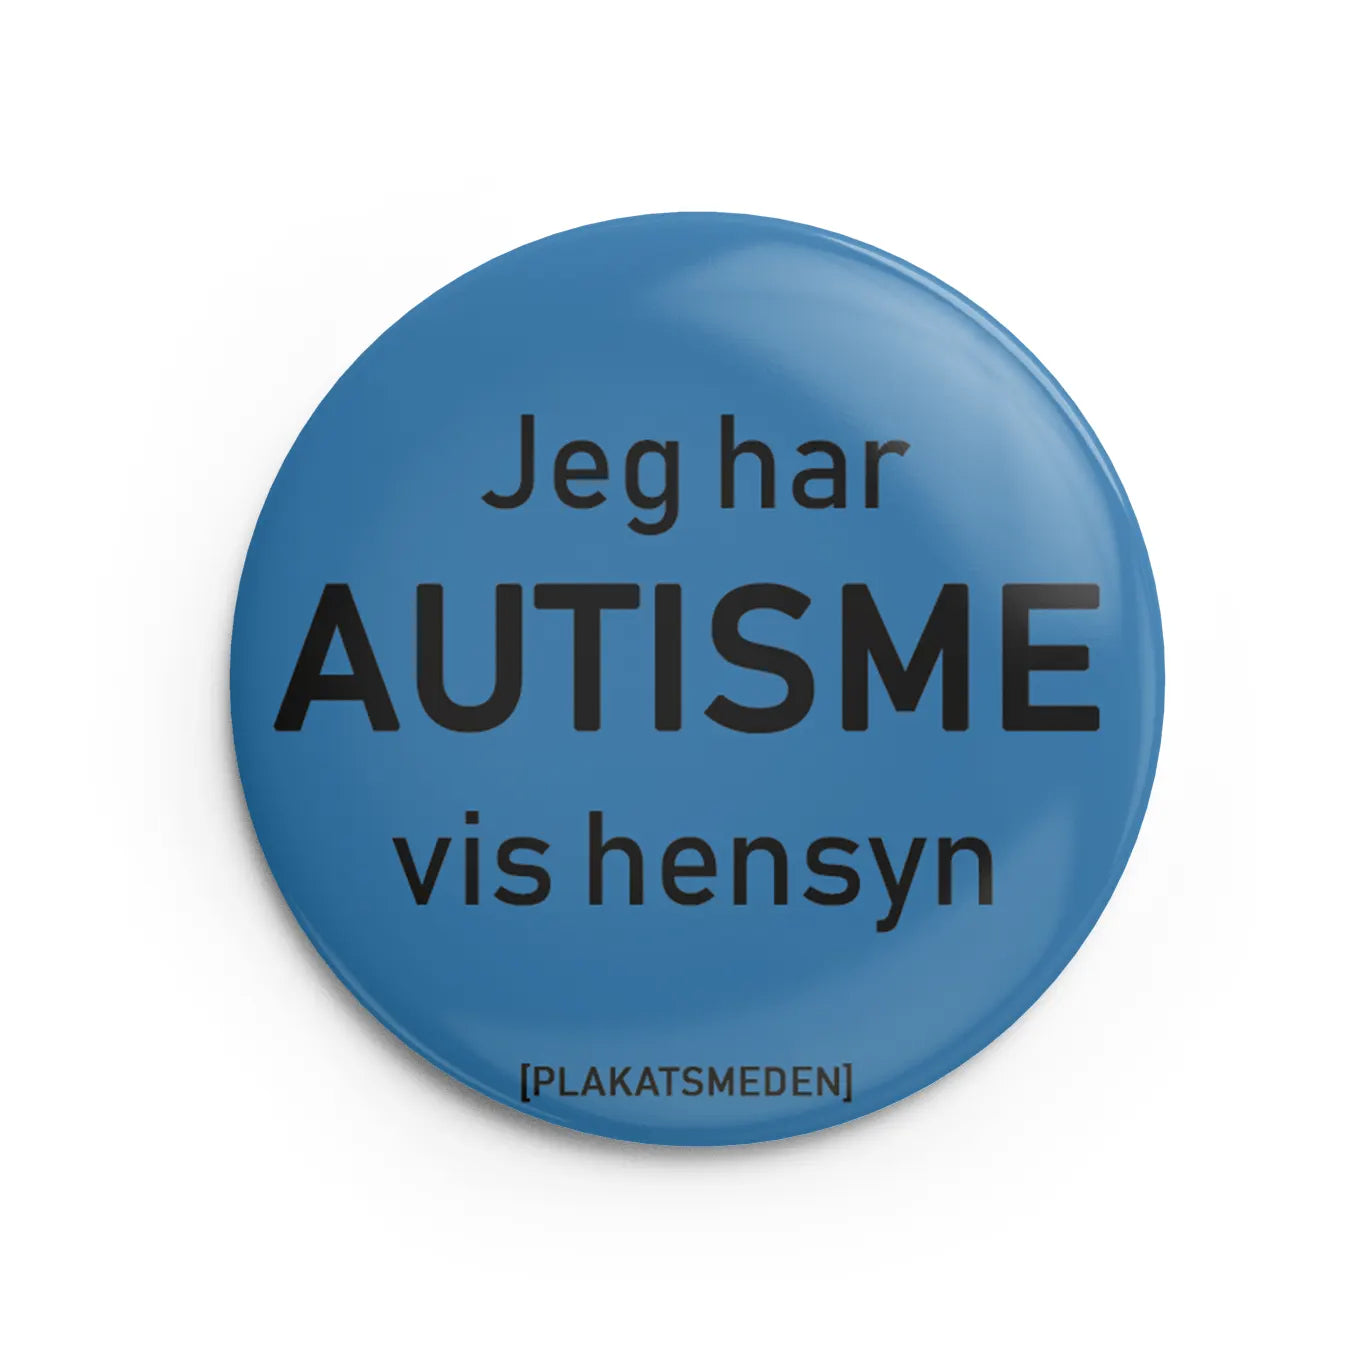 Jeg har autisme, vis hensyn - Badge